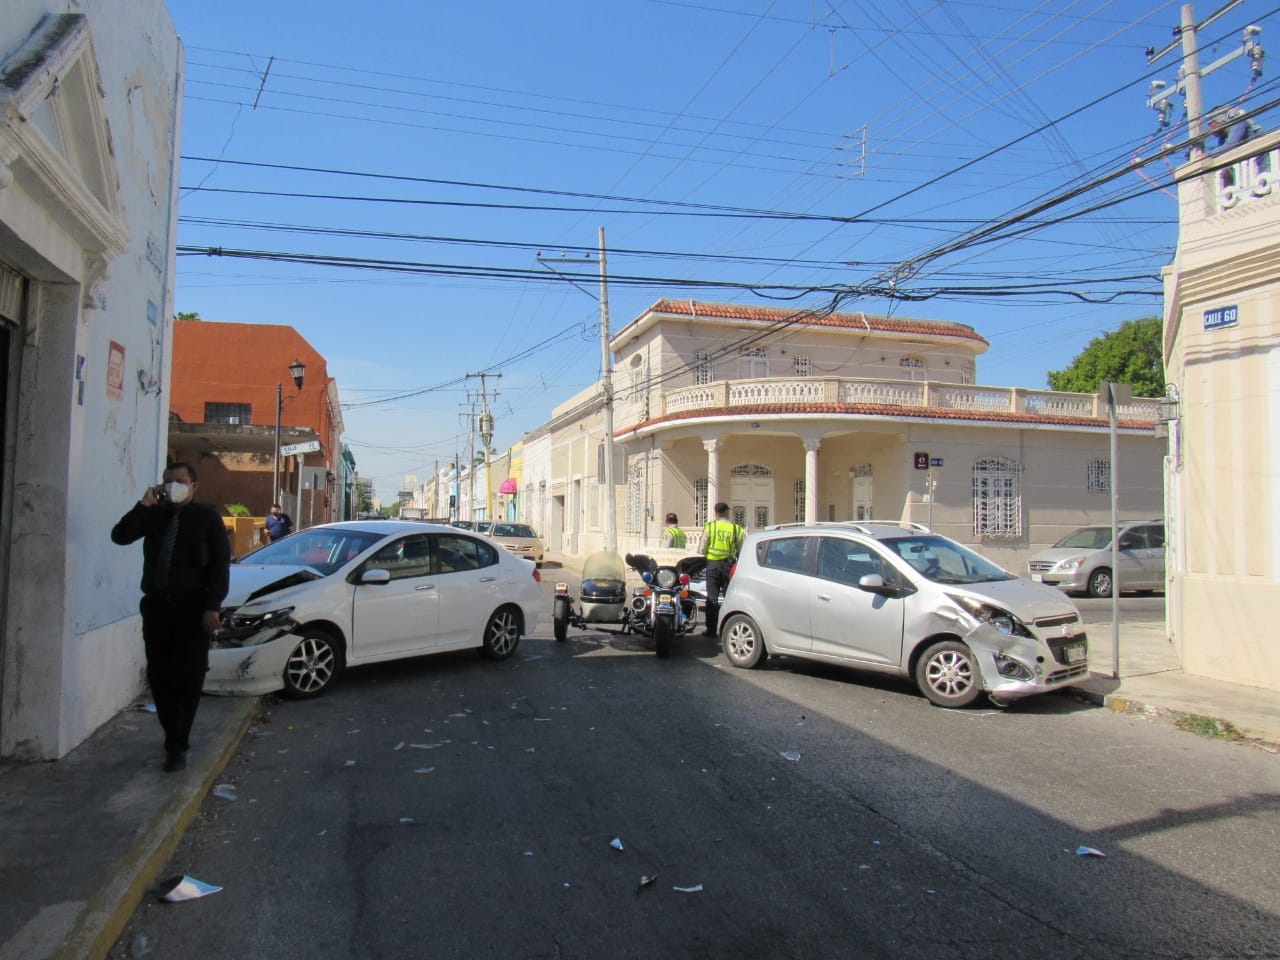 Automovilista ocasiona choque en el Centro Histórico de Mérida